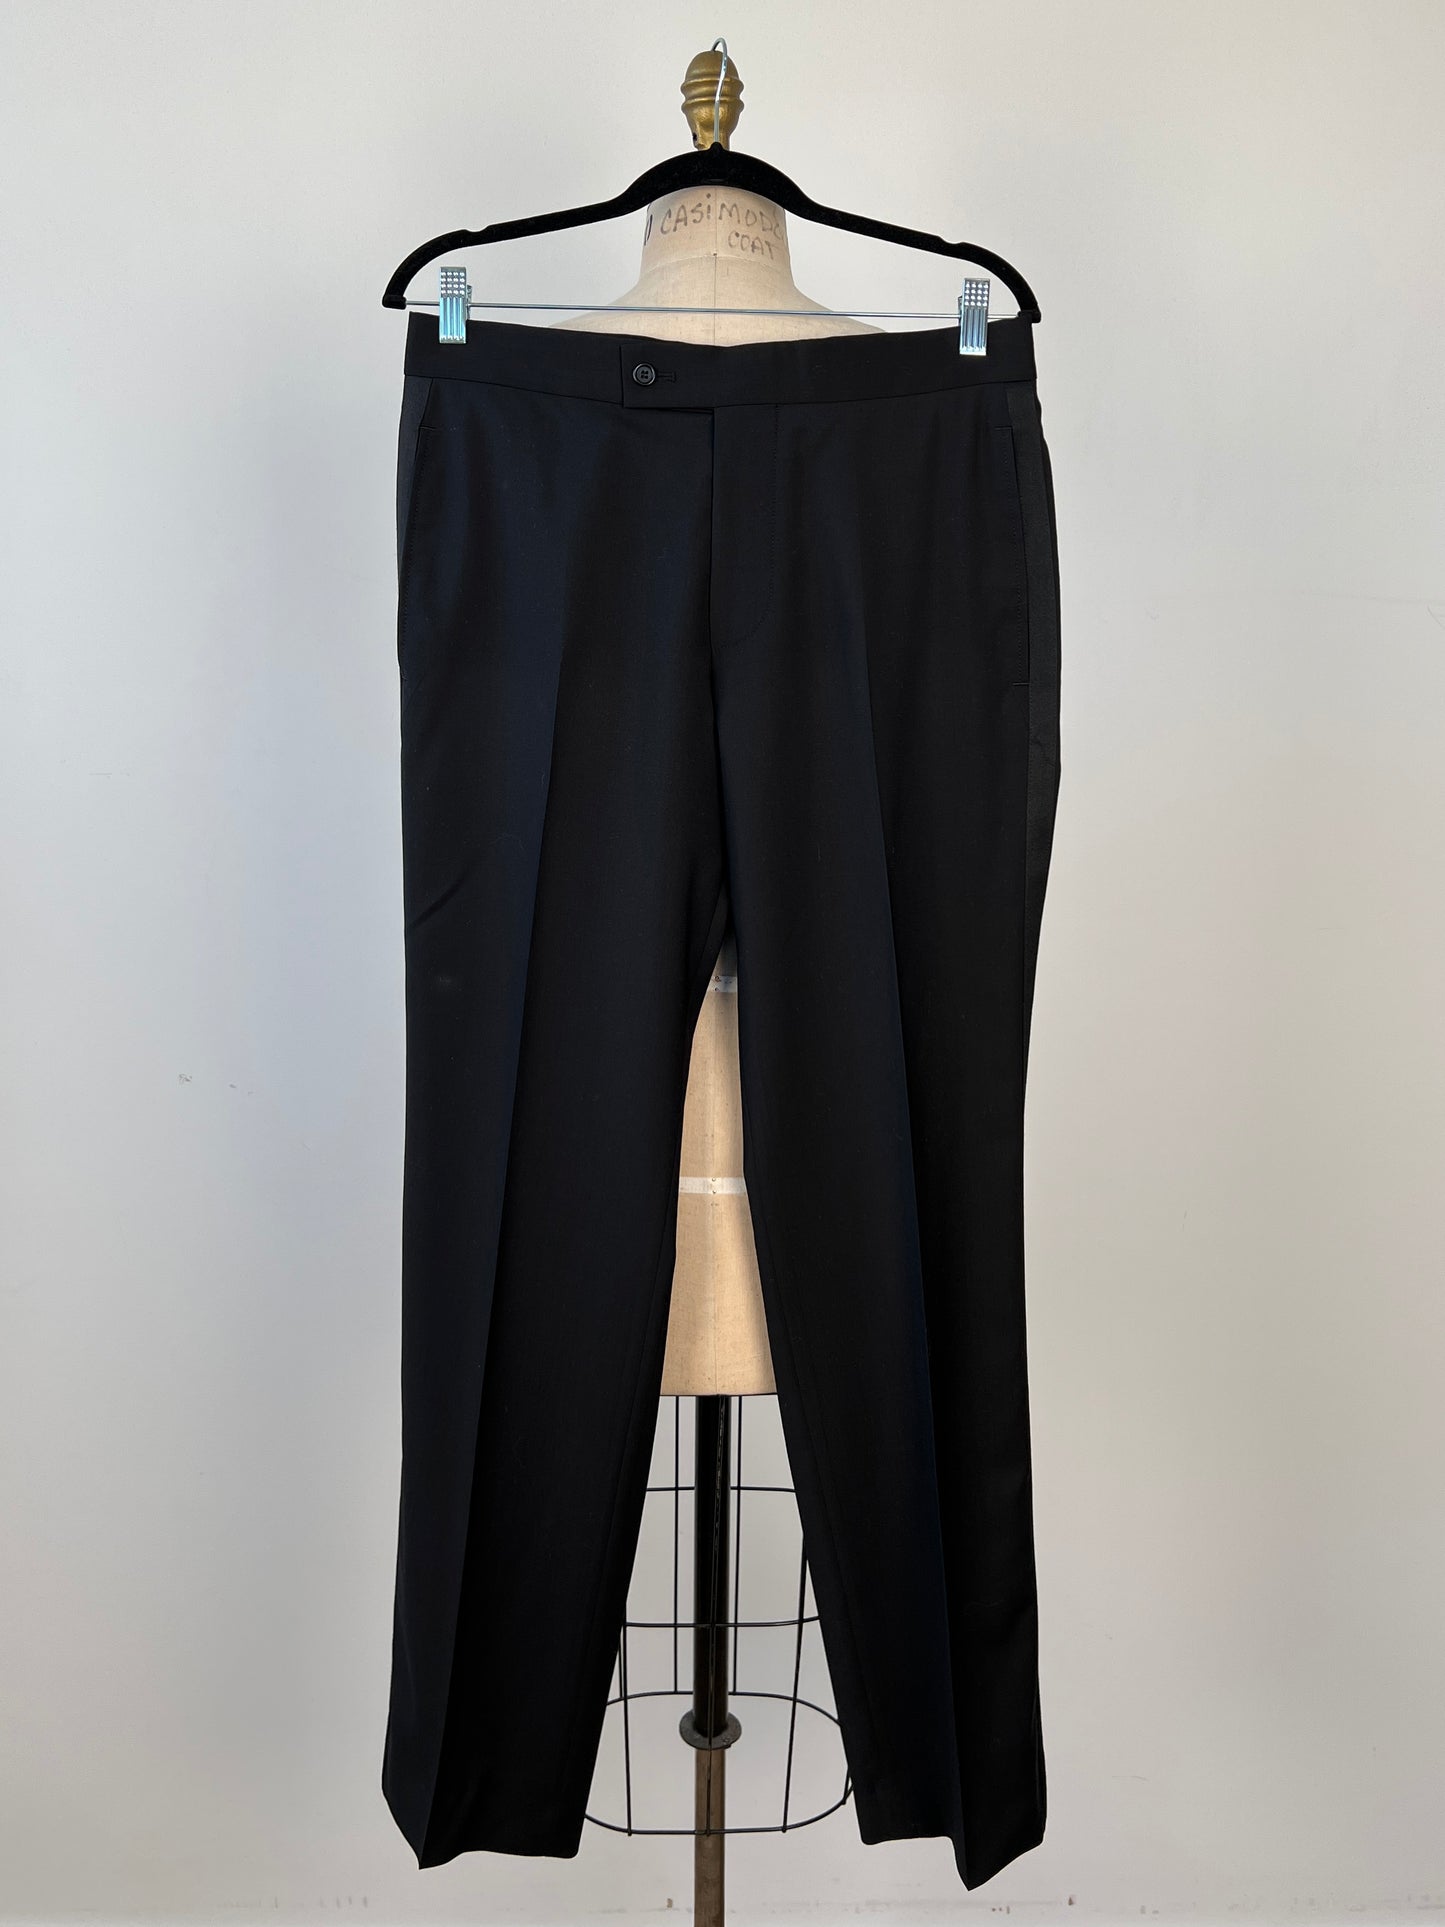 Pantalon tuxedo homme en laine vierge noire (M)